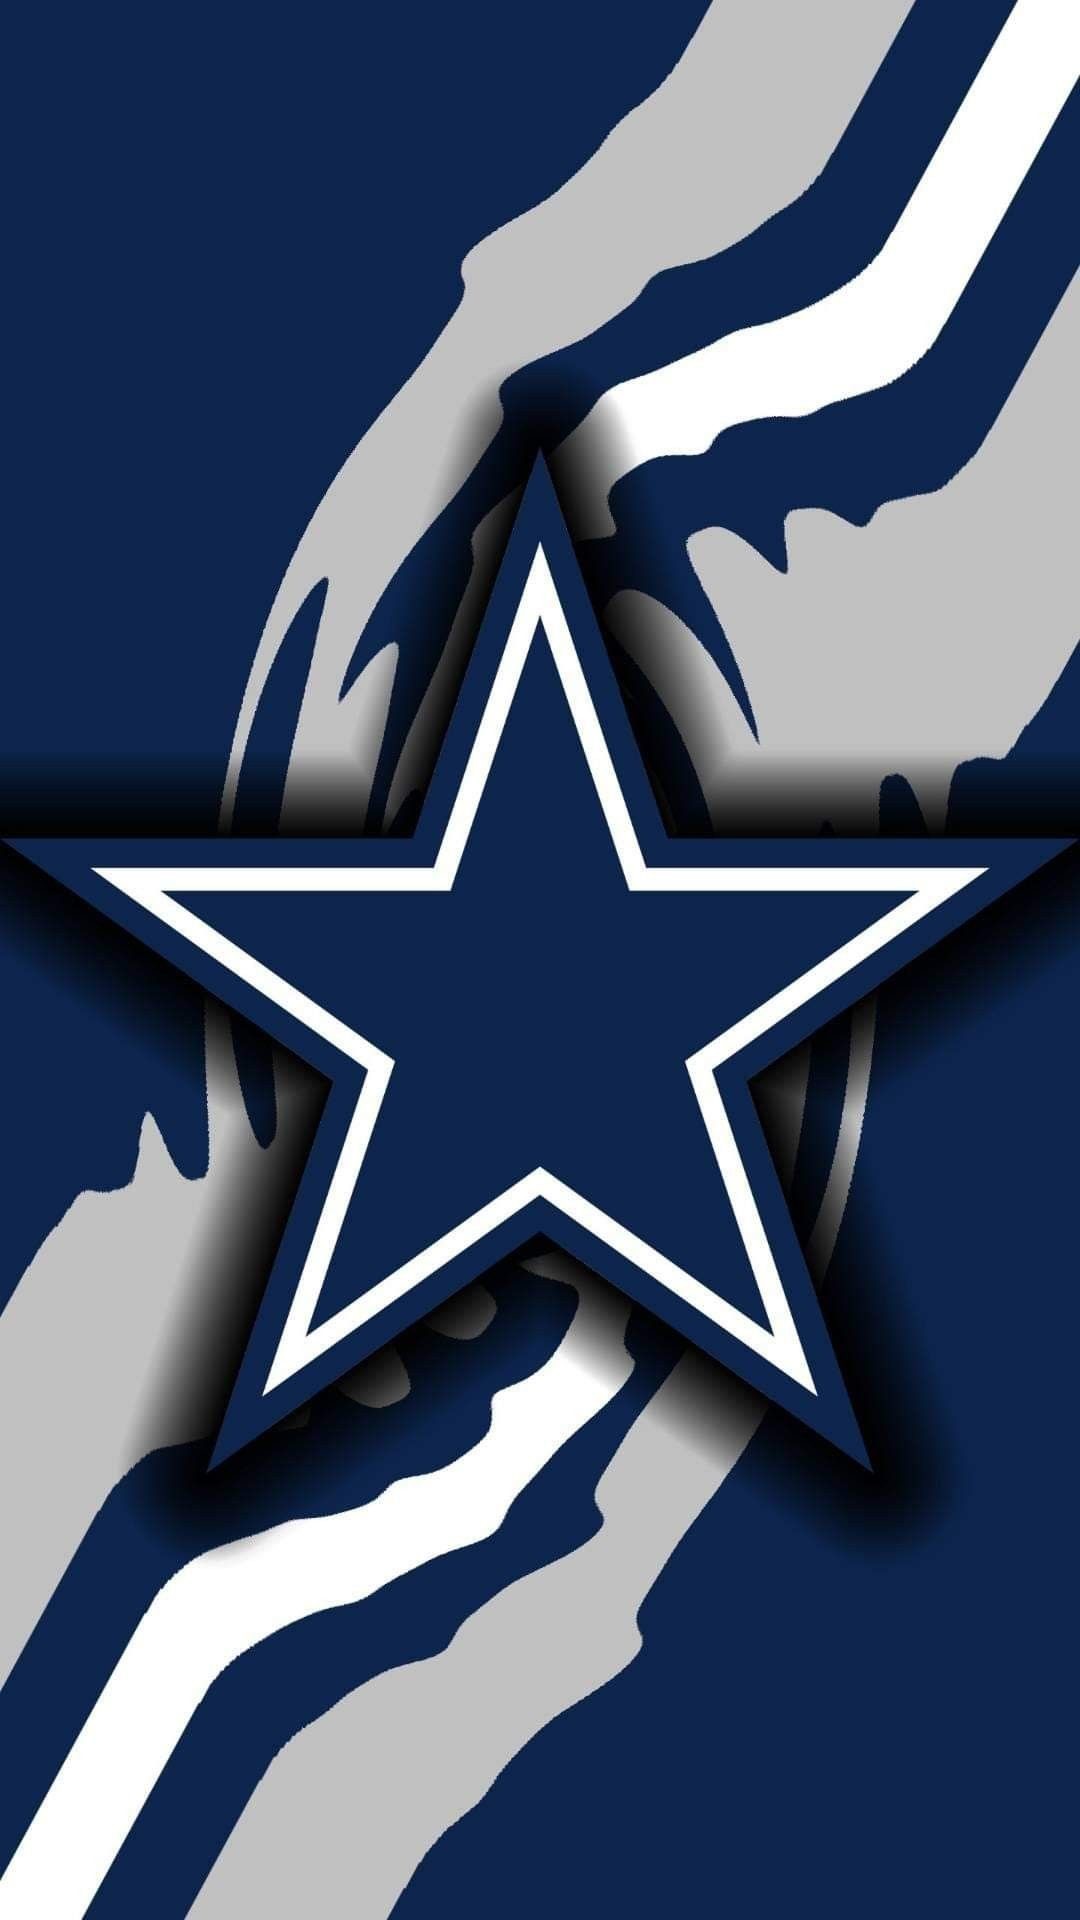 1080x1920 Dallas Cowboys Images, Dallas Cowboys Logo, Cowboys 4, Pittsburgh Steelers, Dallas  Cowboys